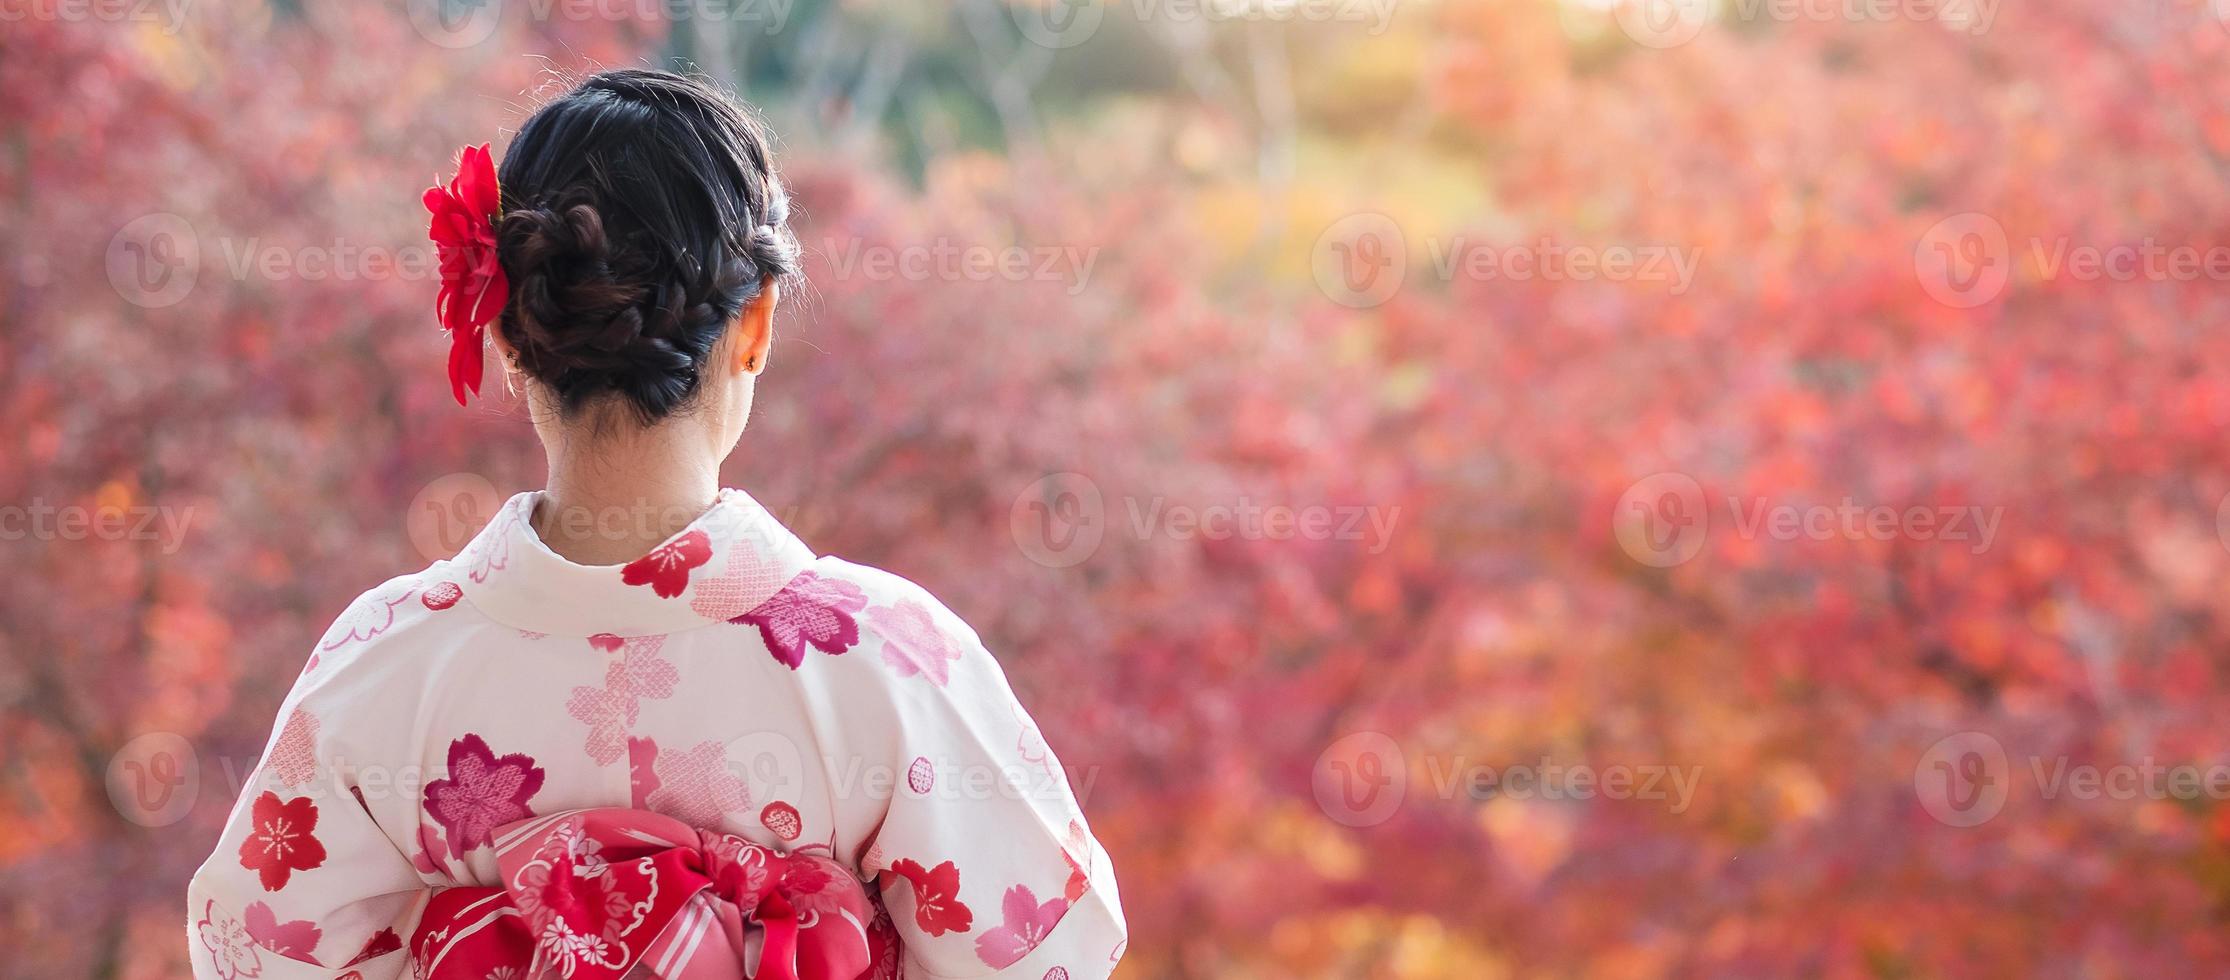 turista jovem vestindo quimono desfrutando com folhas coloridas no templo kiyomizu dera, kyoto, japão. menina asiática com estilo de cabelo em roupas tradicionais japonesas na temporada de folhagem de outono foto